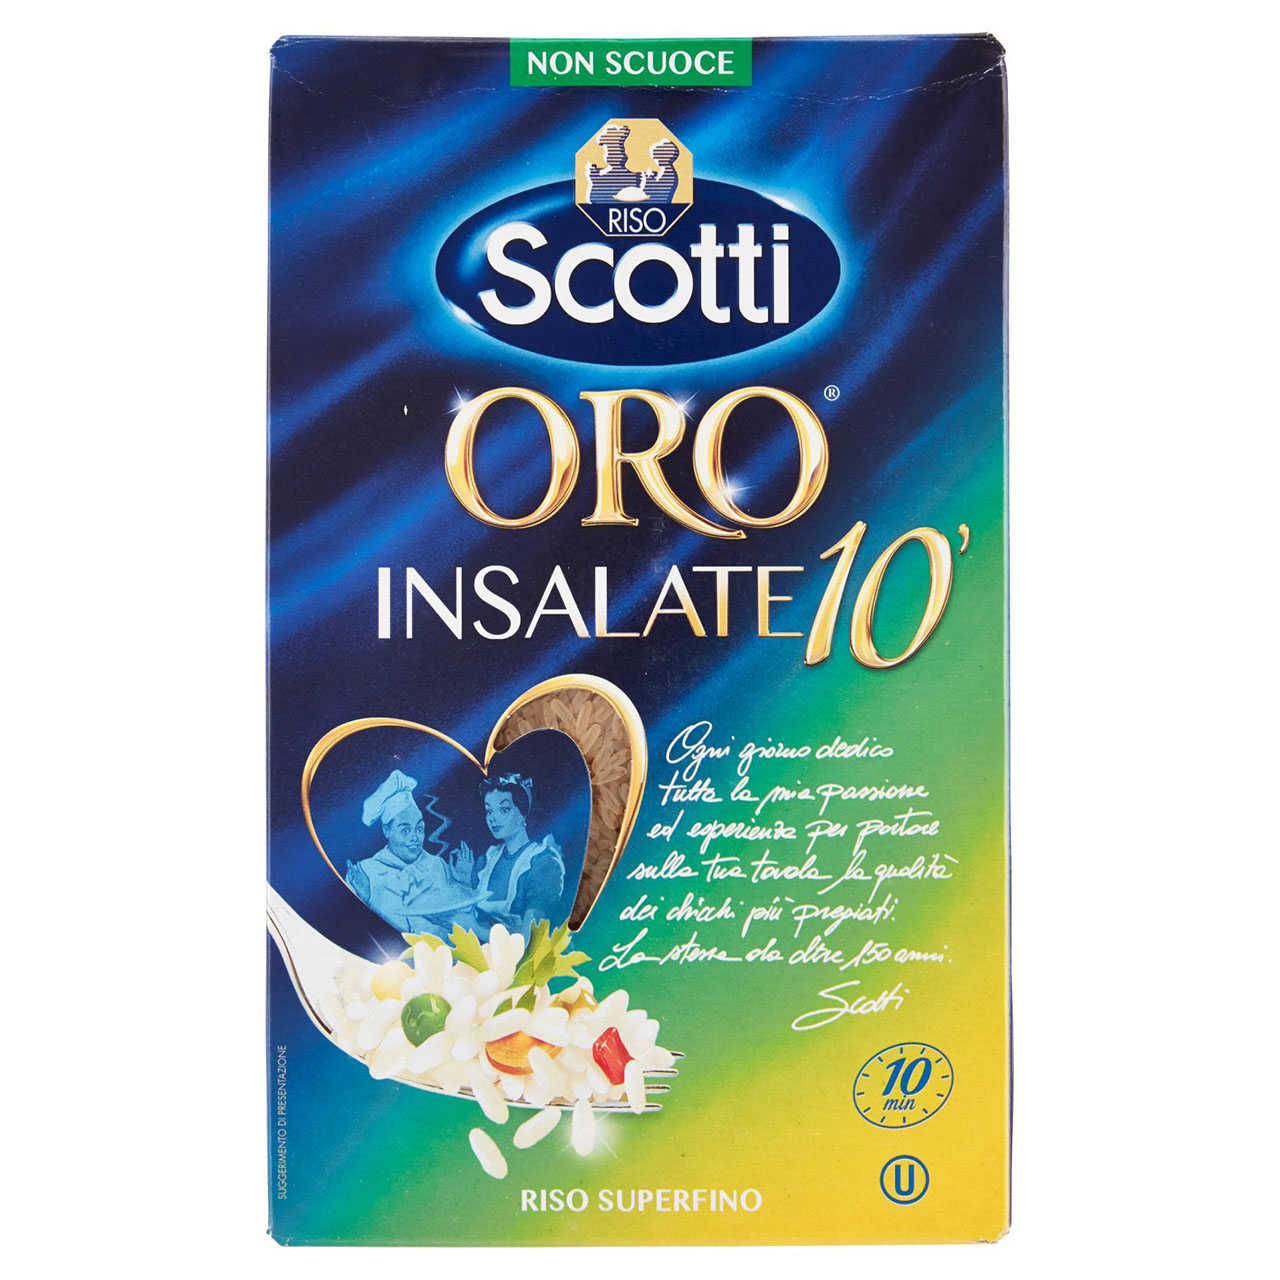 Riso Scotti Oro Insalate 10' in vendita online